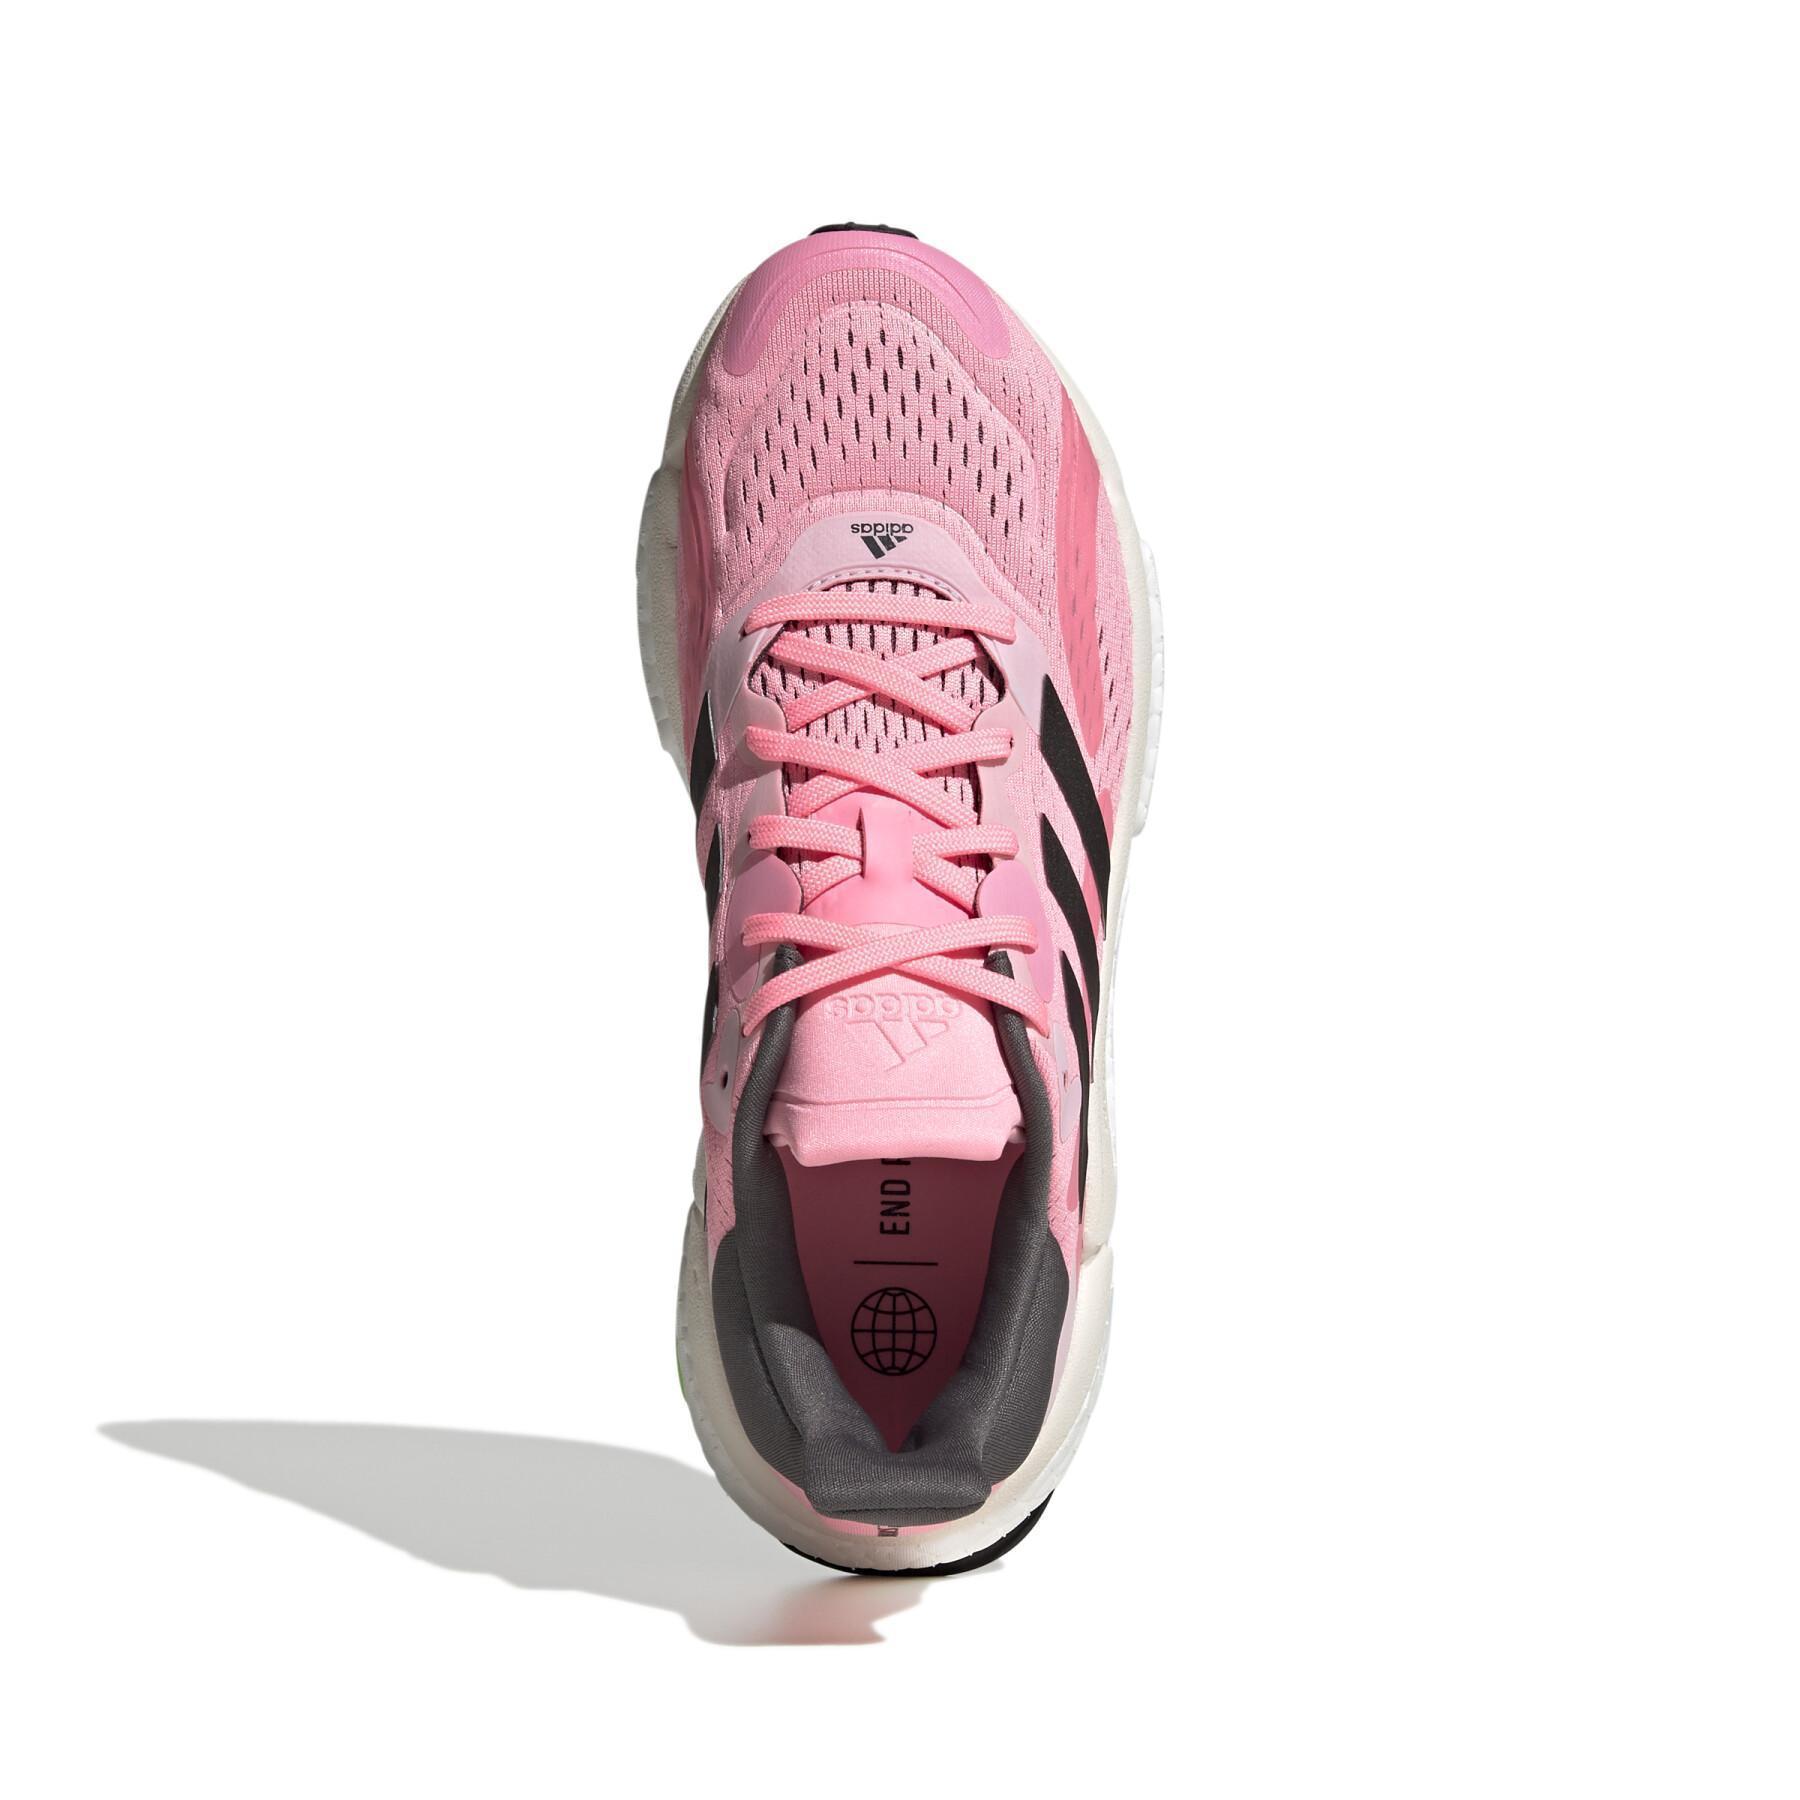 Laufschuhe für Frauen adidas Solar boost 4